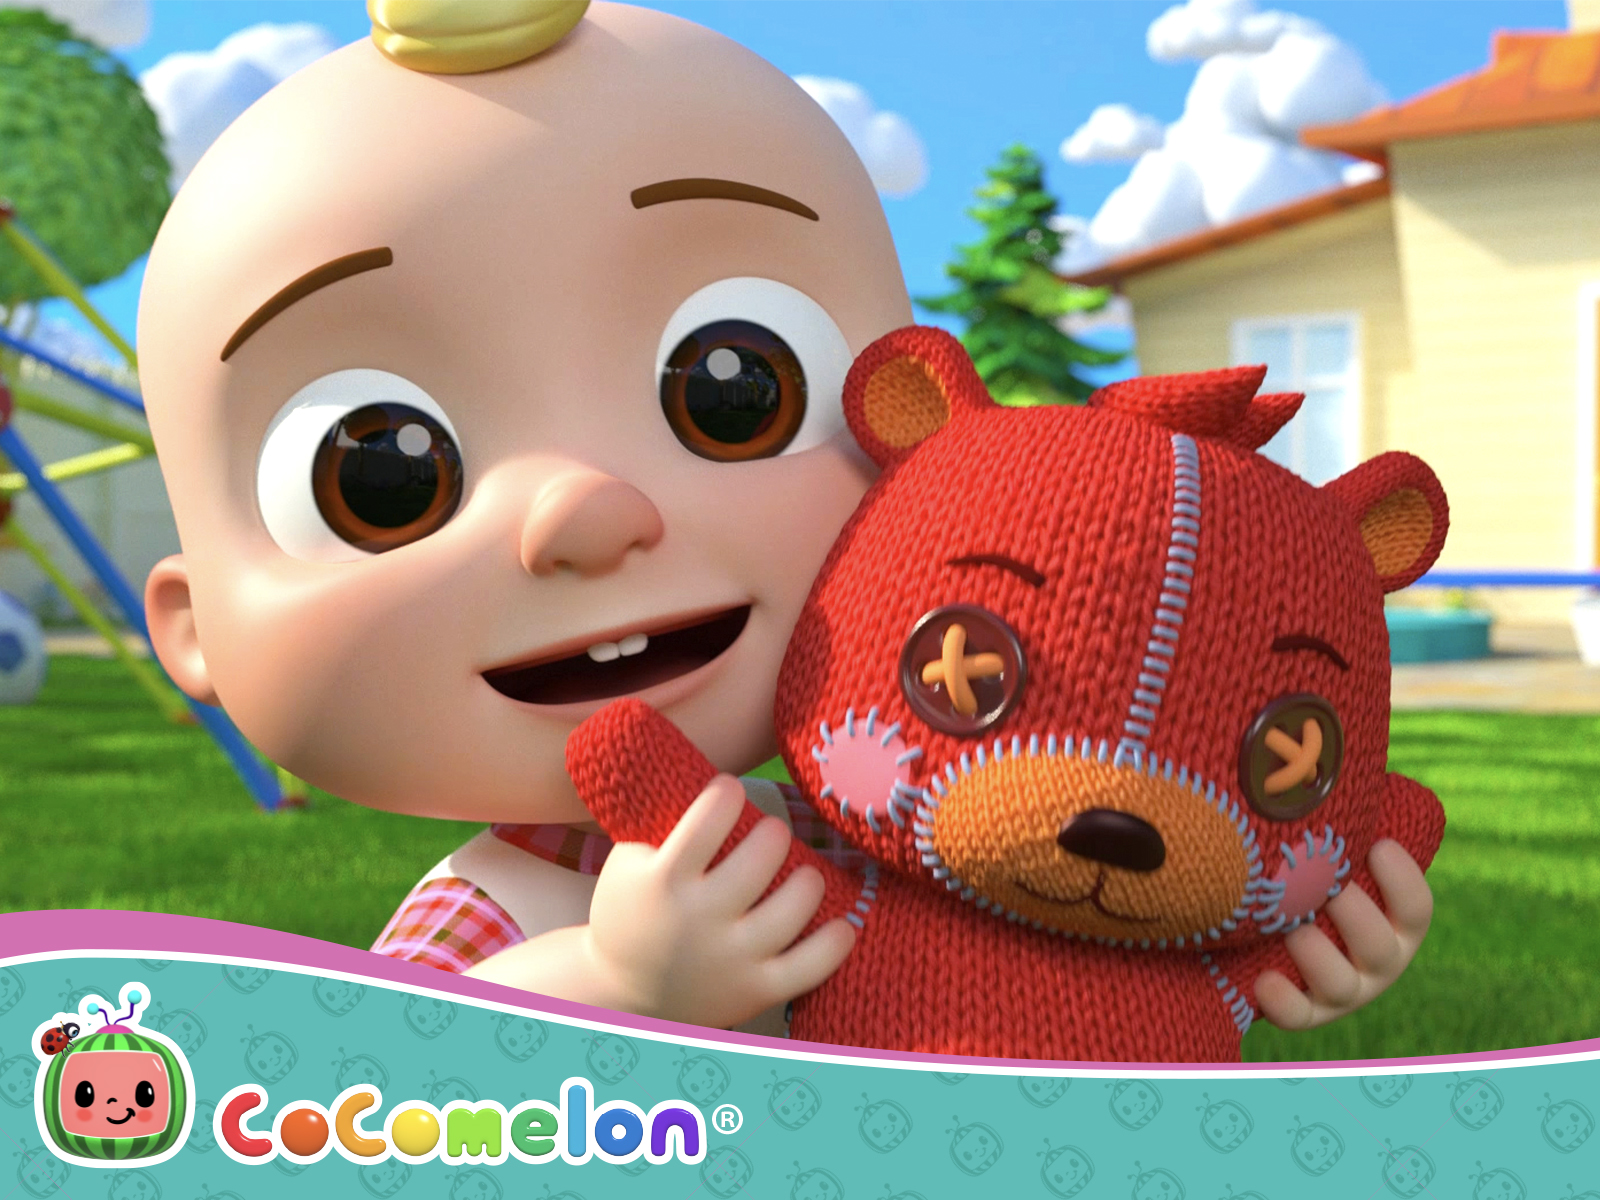 Cocomelon (TV Series 2019–2020)